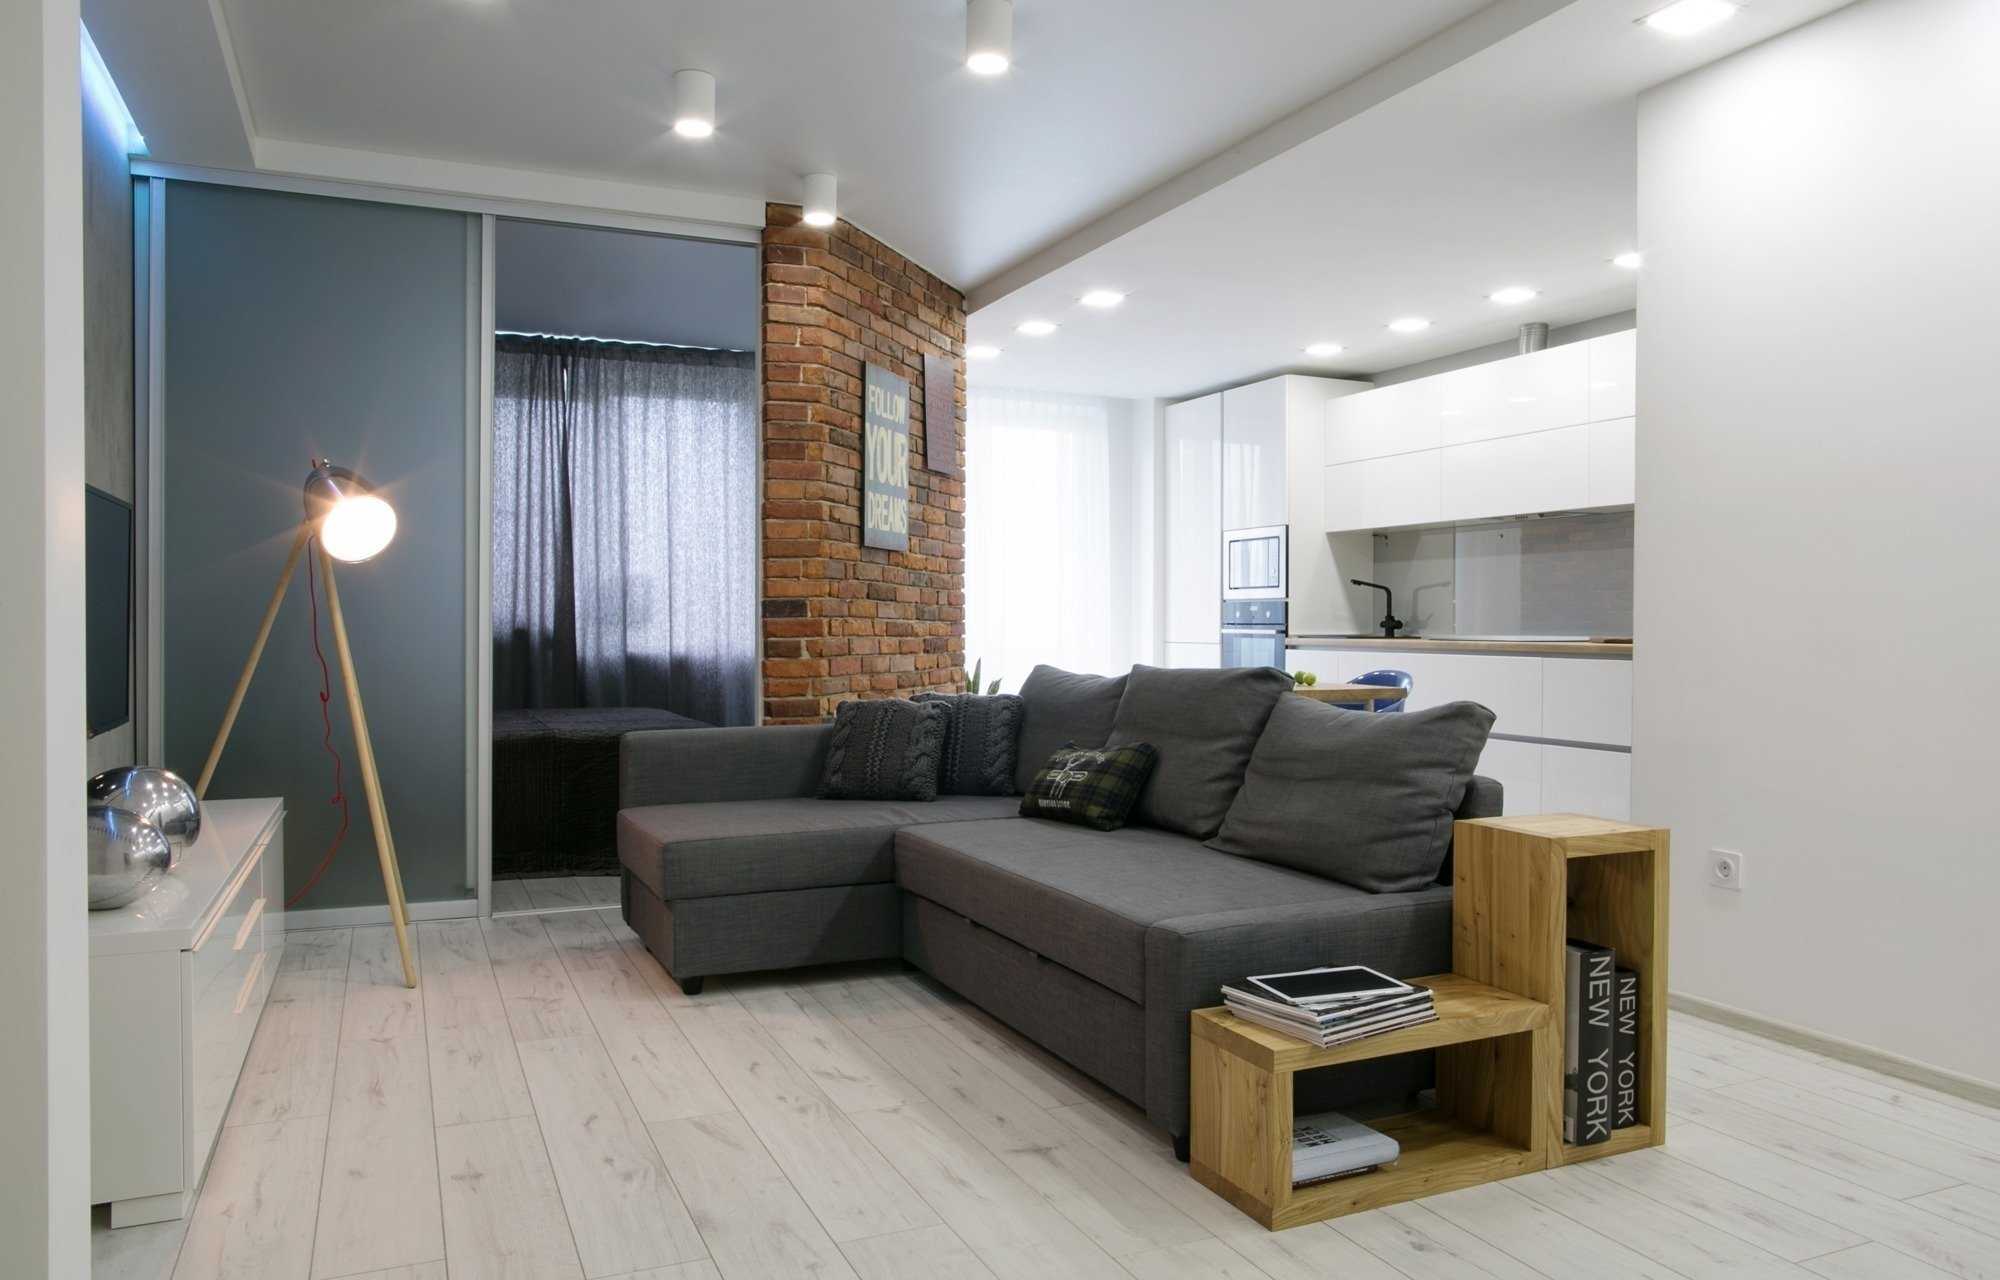 Квартира 40 кв. м.: варианты планировки и зонирования небольшой квартиры. выбор стилистики интерьера, растановка мебели, настройка освещения (фото + видео)